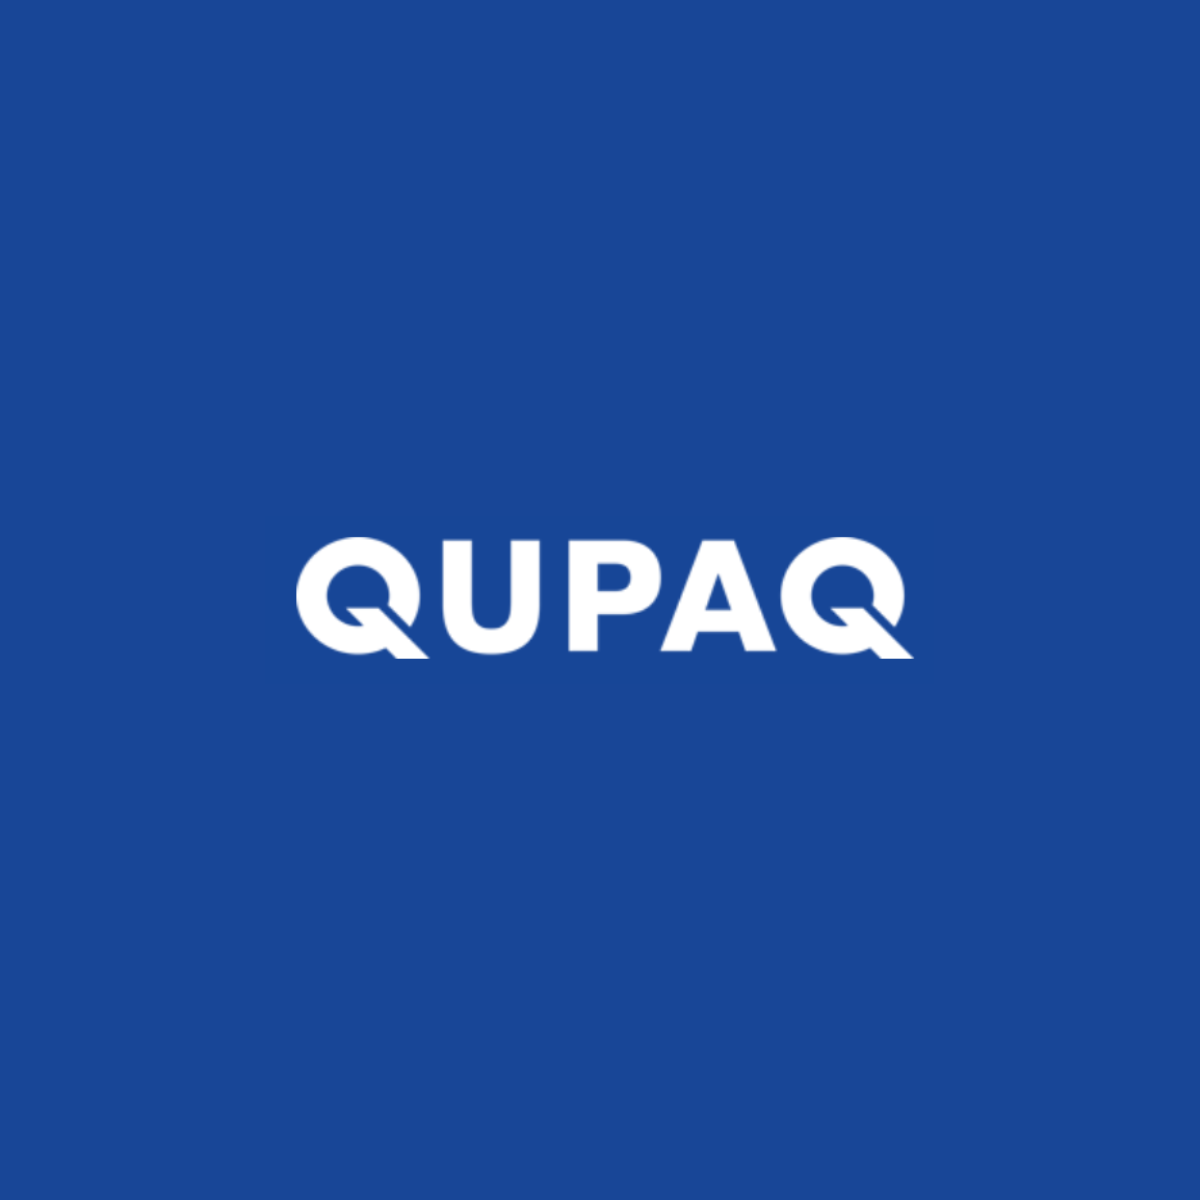 QUPAQ logo